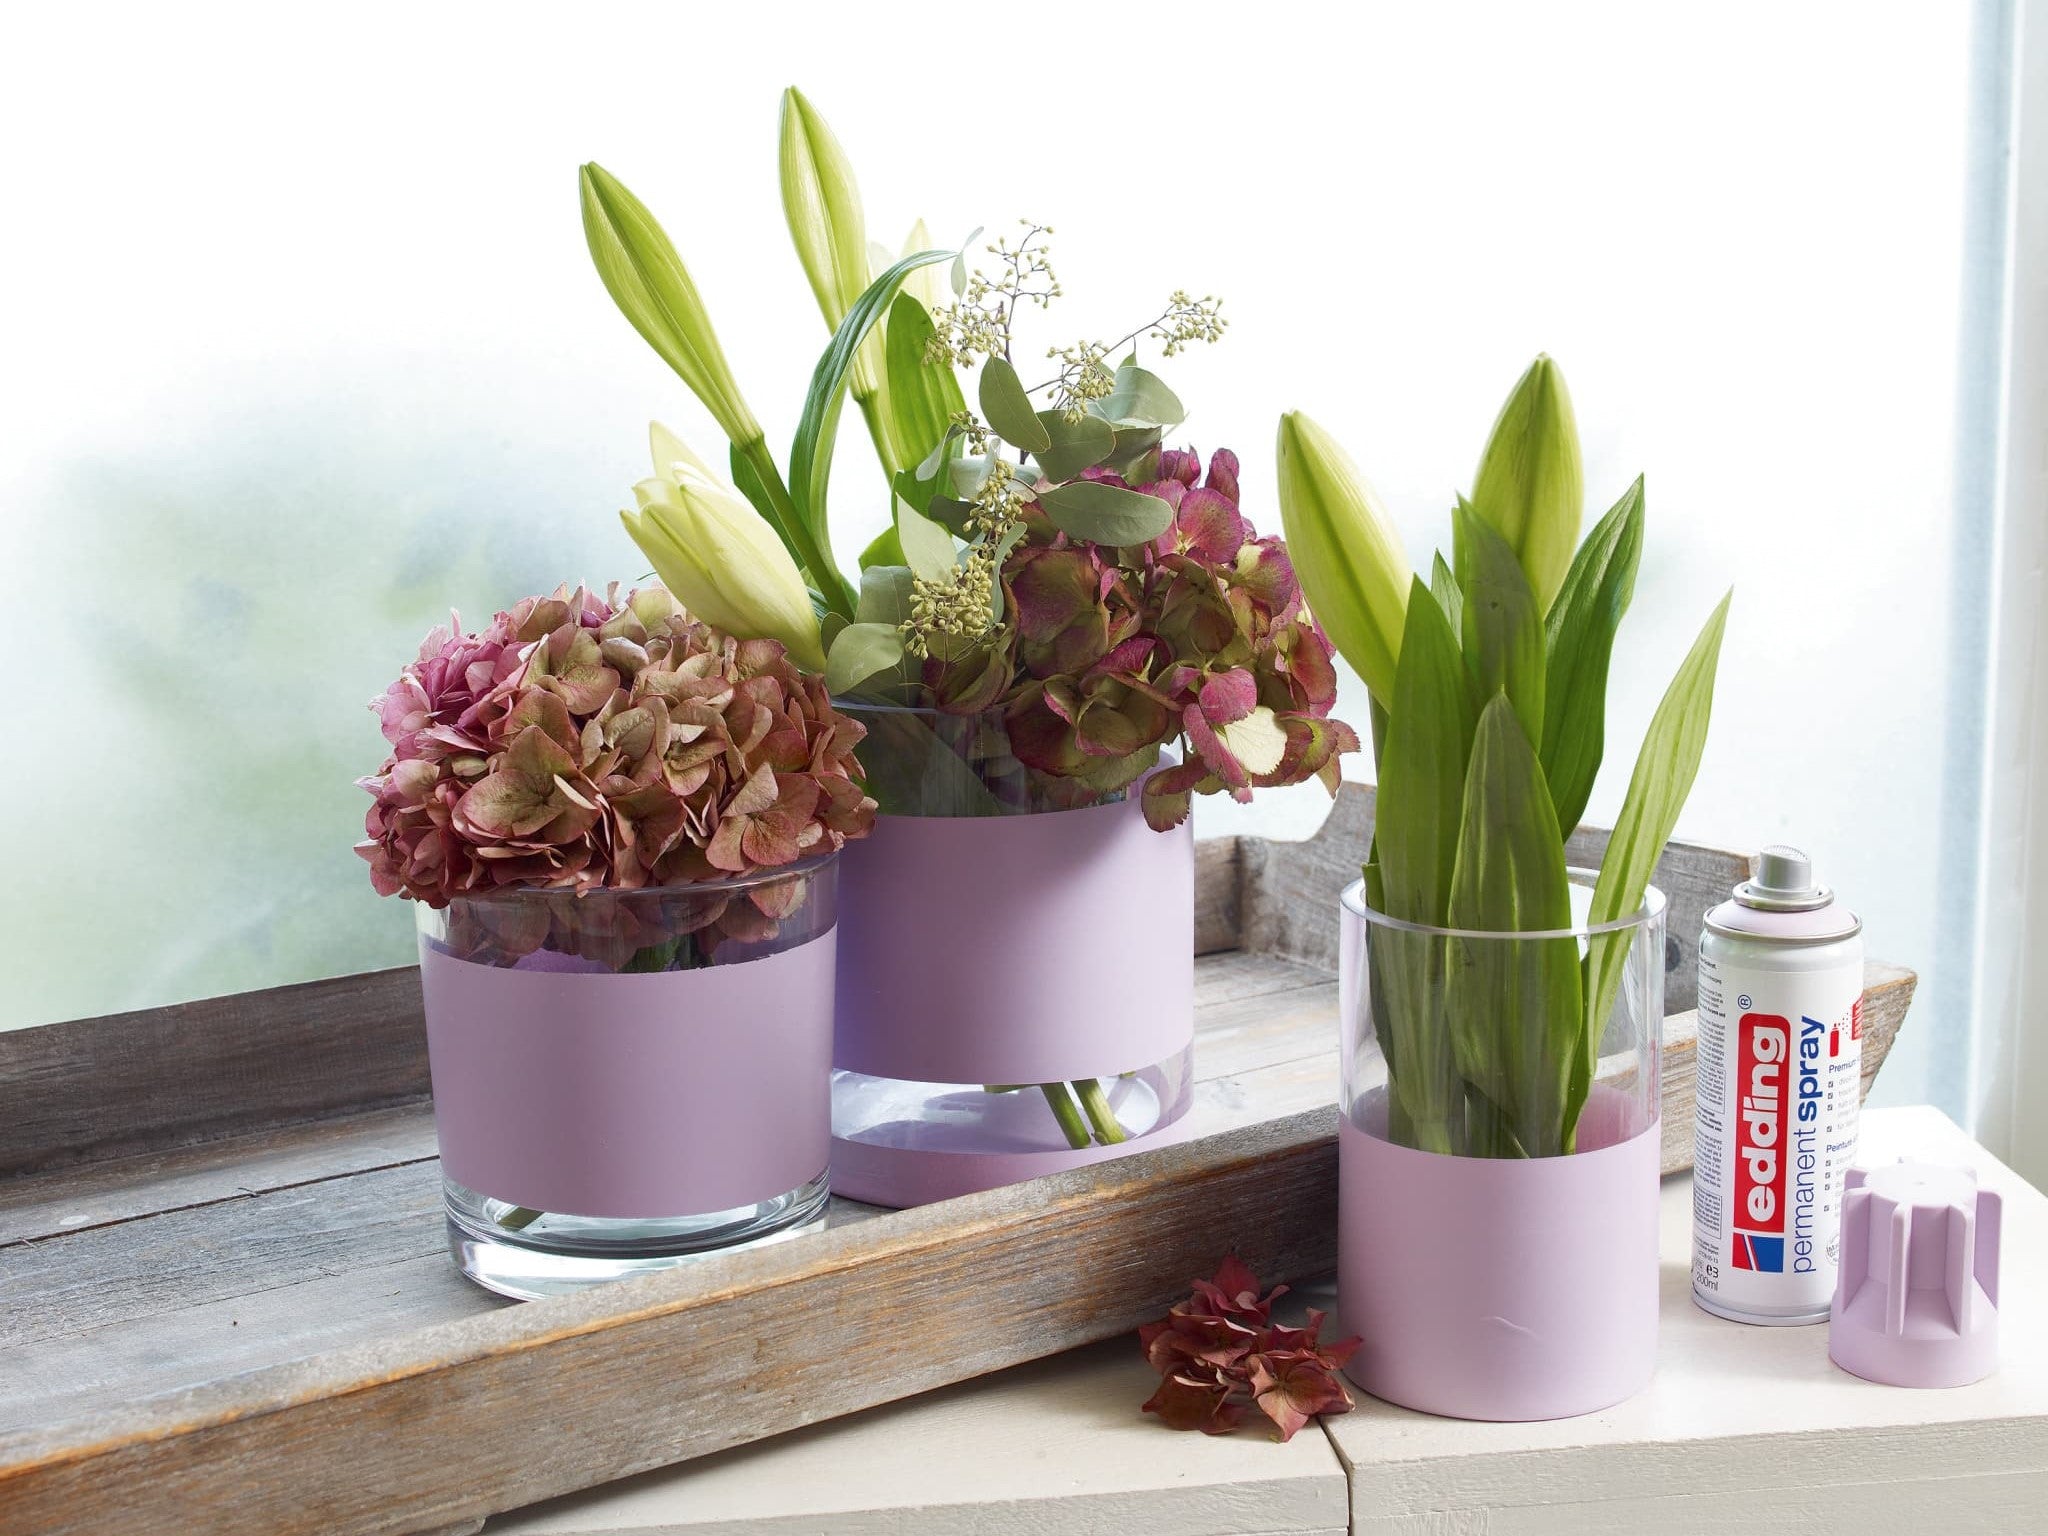 Drei Topfpflanzen mit grünen Blättern und Blüten in verschiedenen Rosa- und Grüntönen, neben einem Fenster auf einer Holzoberfläche platziert, mit einer Dose edding 5200 Permanentspray Acryllack Pastell & sanfte Farben und einem Pinsel.